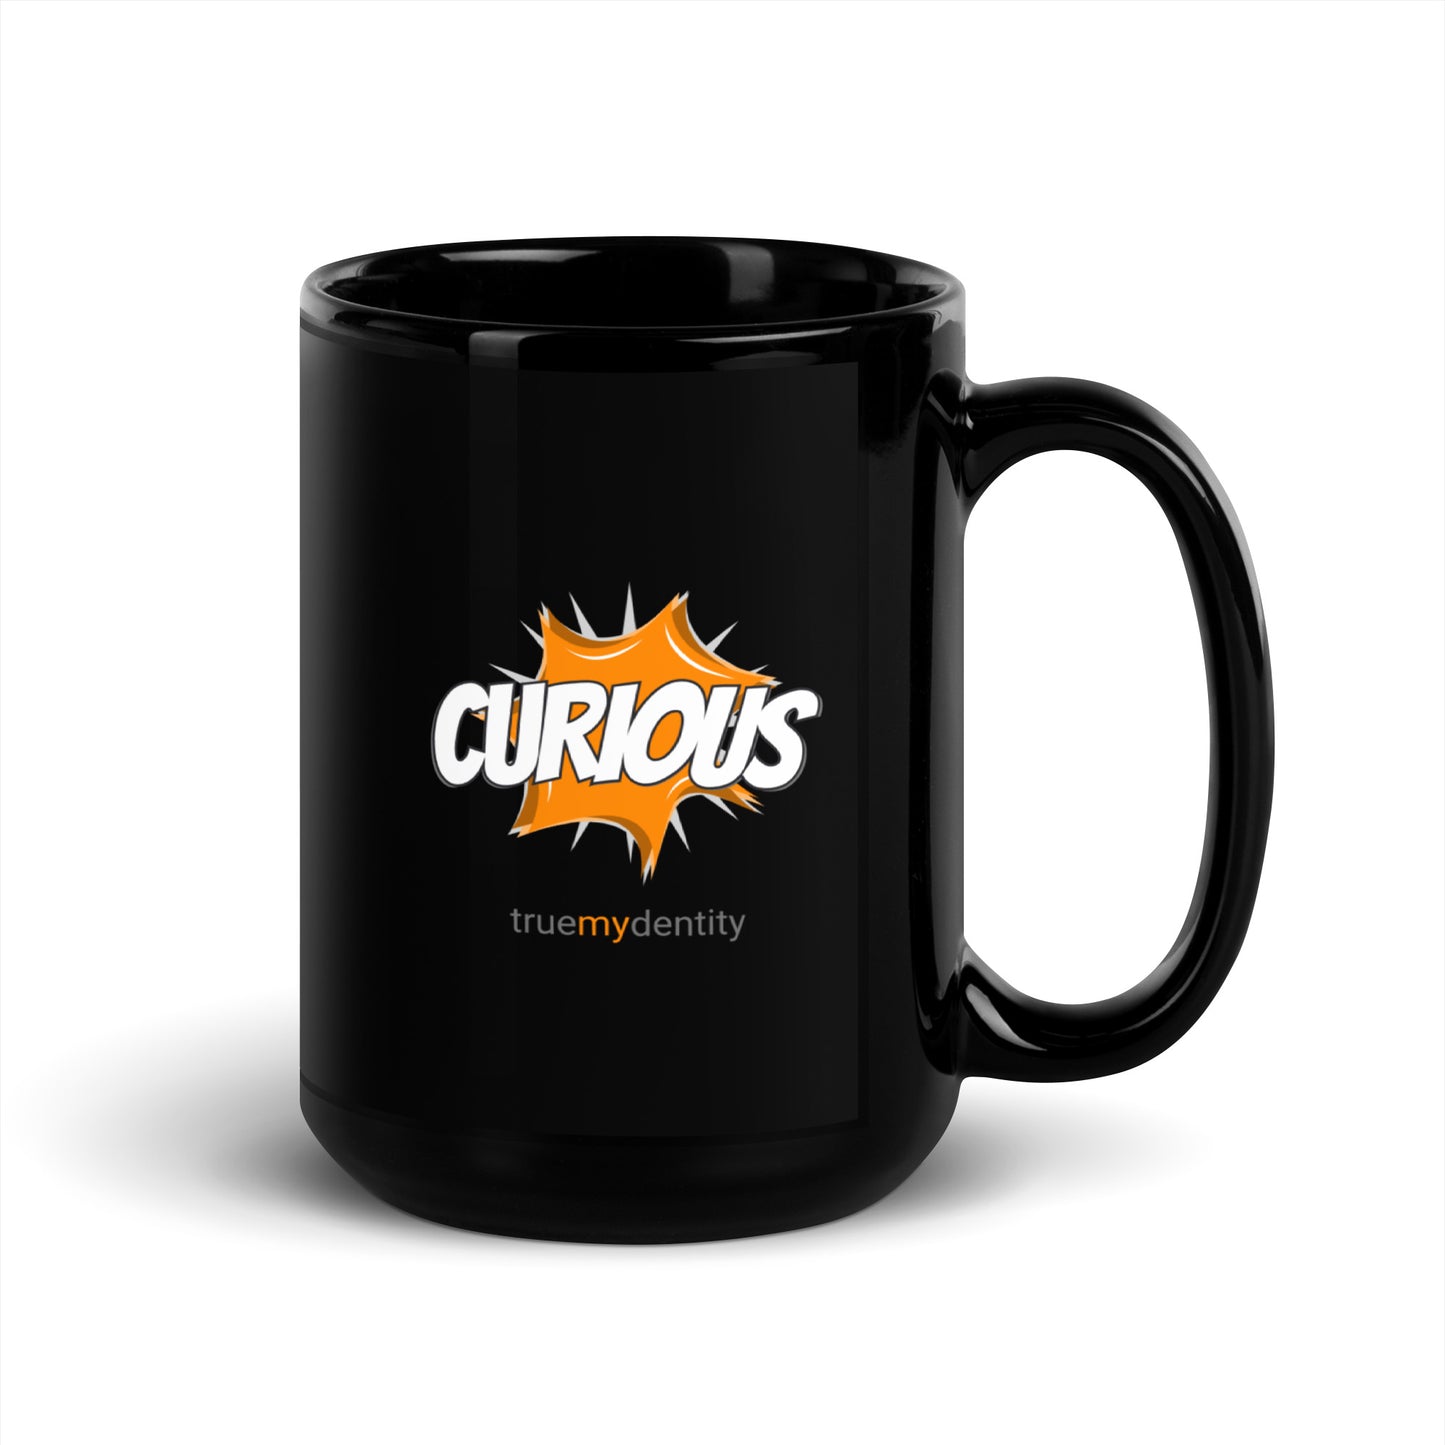 CURIOUS Black Coffee Mug Action 11 oz or 15 oz